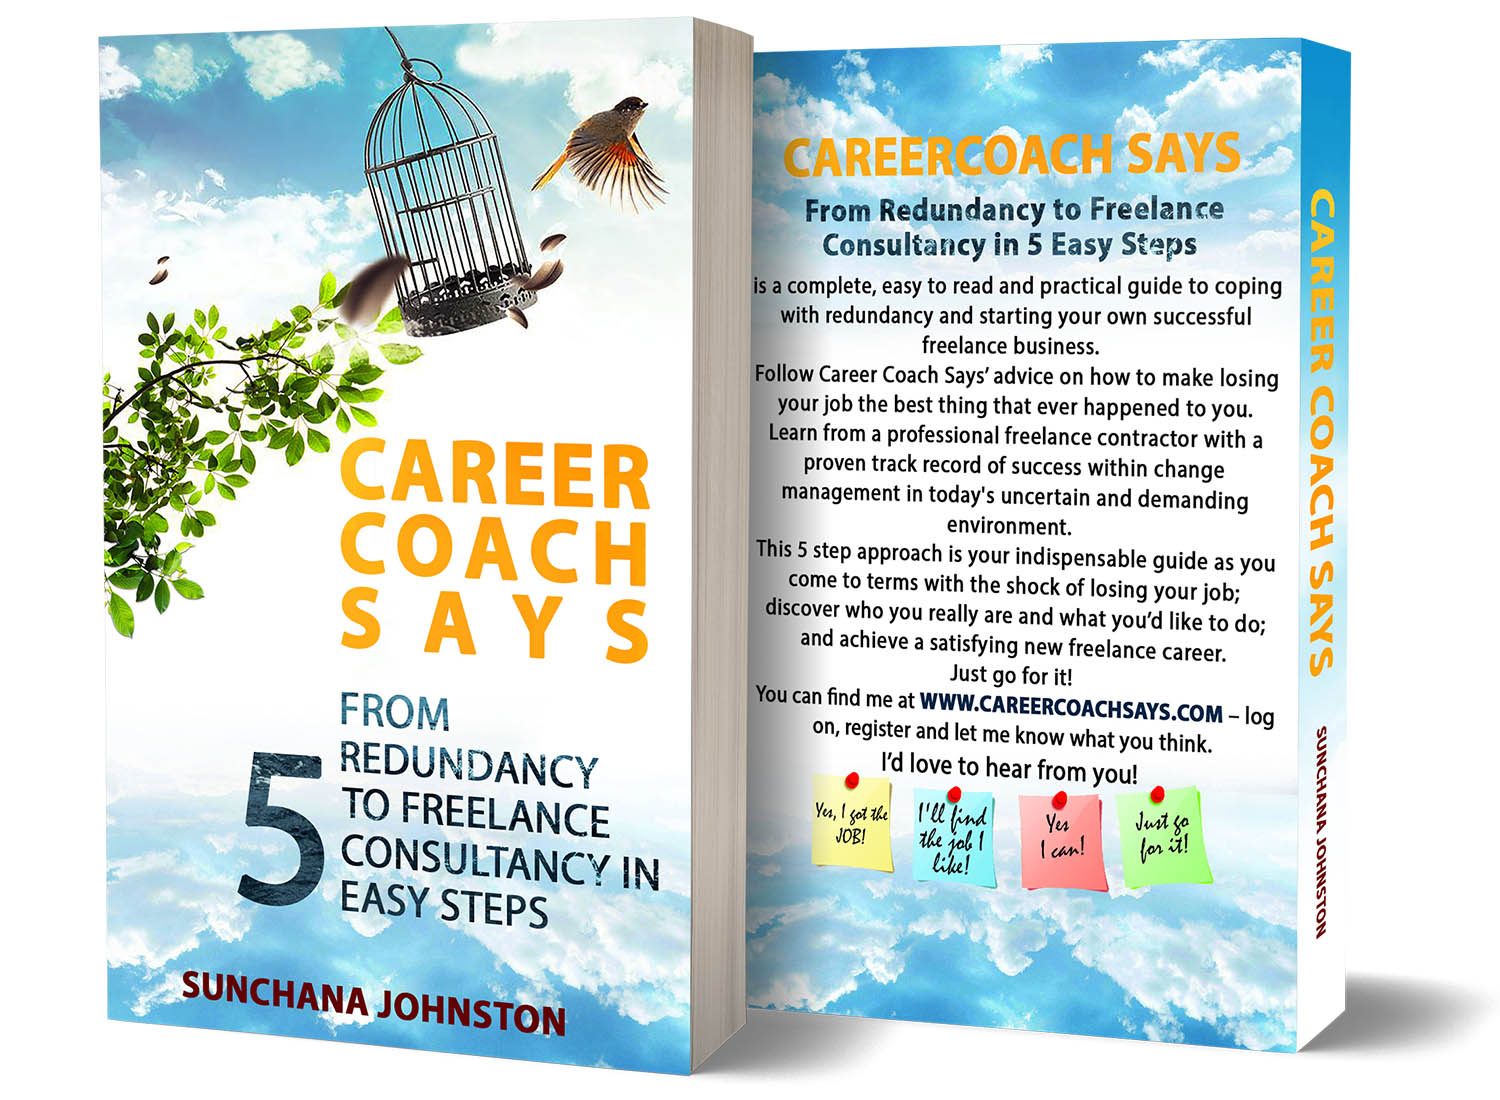 bookconsilio-portfolio-career-coach-says-paperback-bookcoverdesign